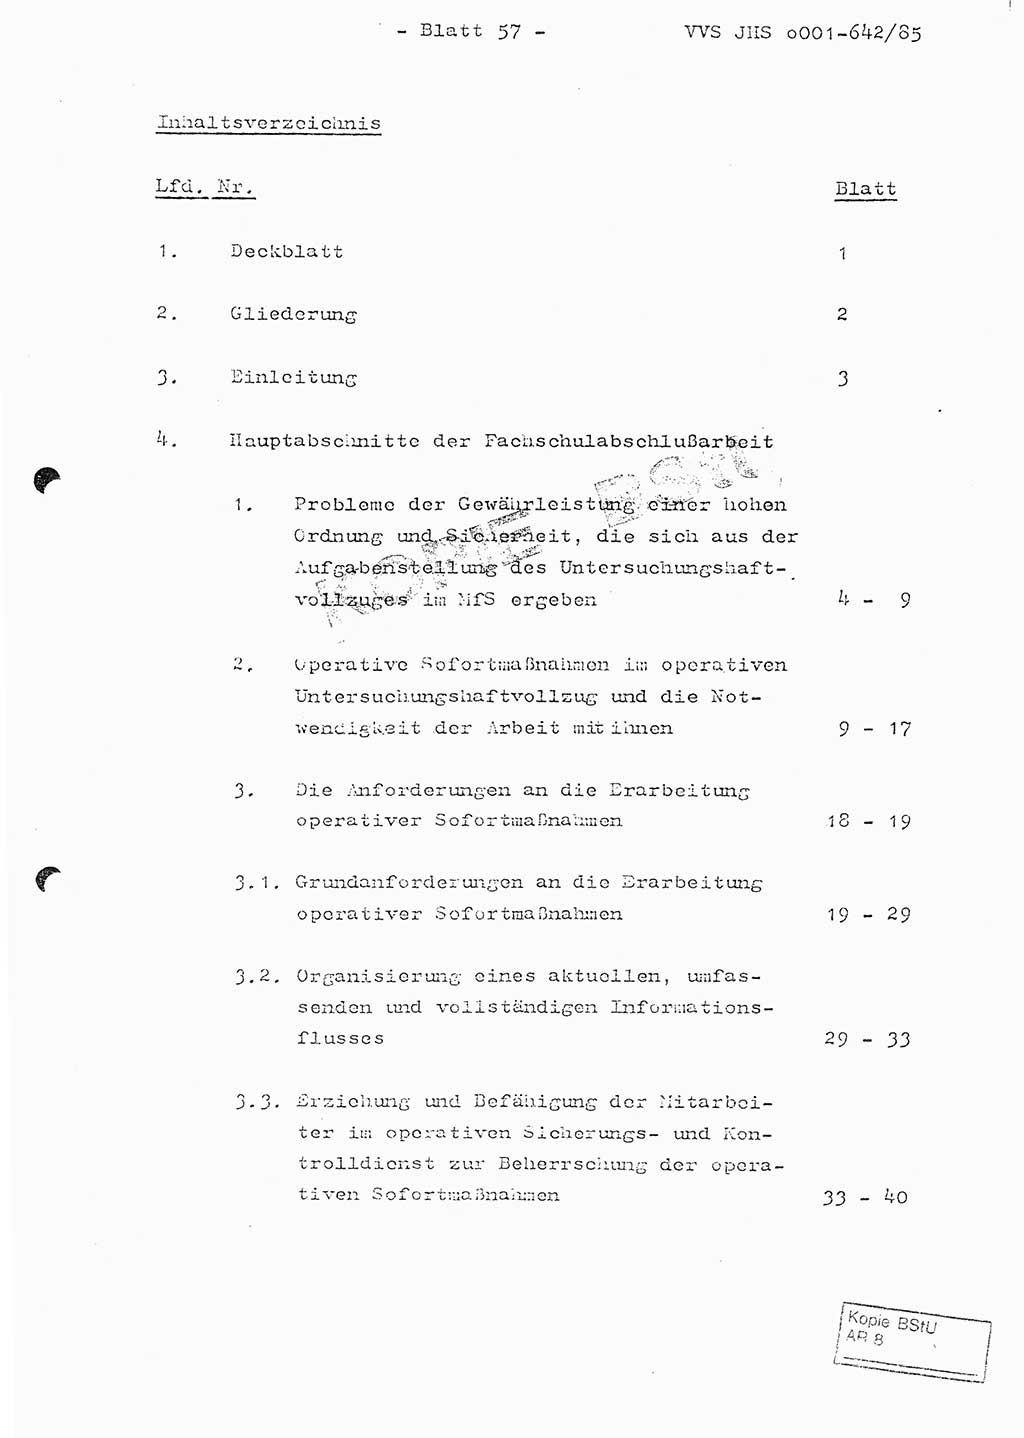 Fachschulabschlußarbeit Oberleutnant Lothar Fahland (Abt. ⅩⅣ), Ministerium für Staatssicherheit (MfS) [Deutsche Demokratische Republik (DDR)], Juristische Hochschule (JHS), Vertrauliche Verschlußsache (VVS) o001-642/85, Potsdam 1985, Blatt 57 (FS-Abschl.-Arb. MfS DDR JHS VVS o001-642/85 1985, Bl. 57)